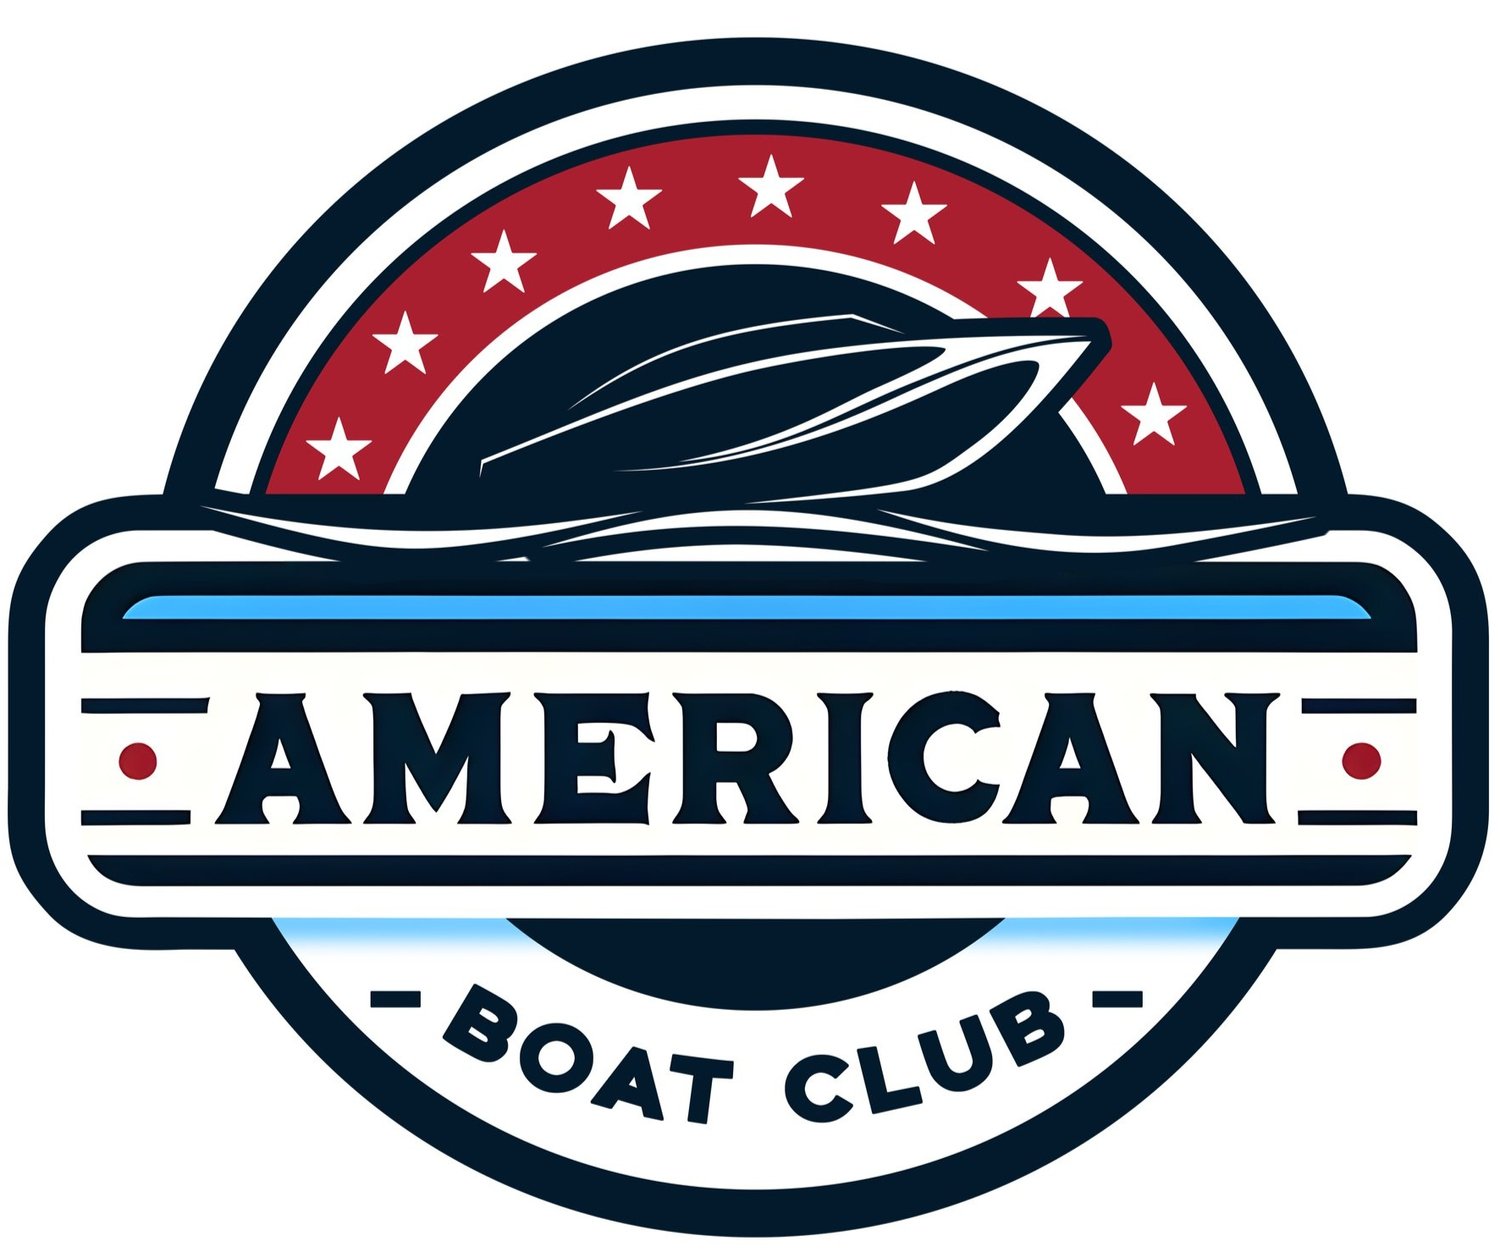 American Boat Club